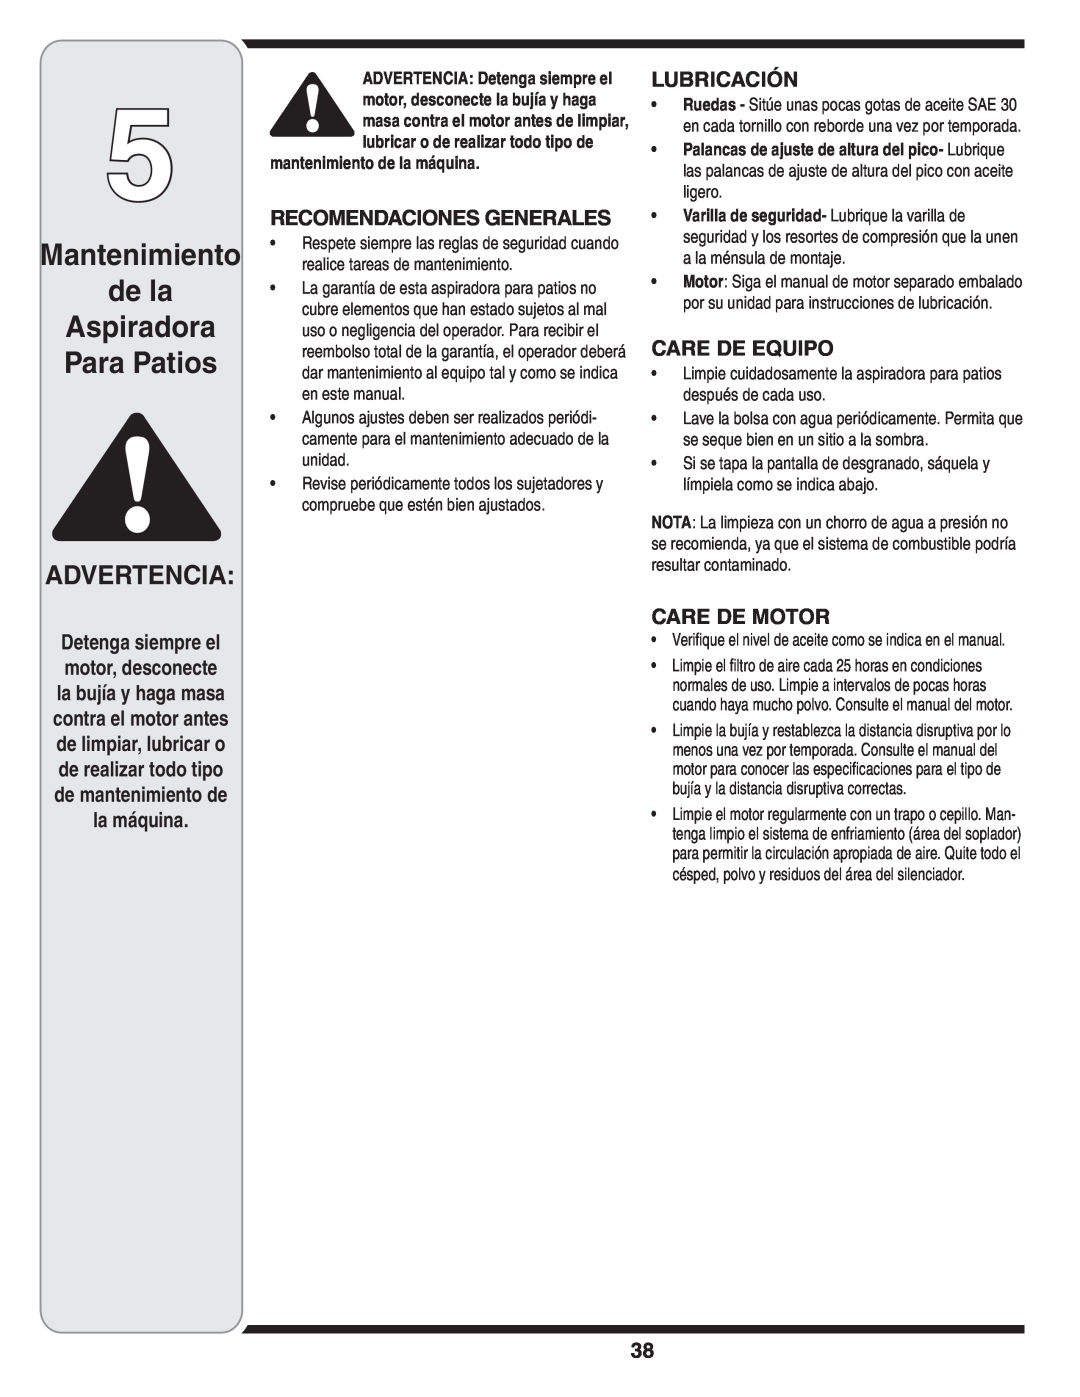 MTD Series 020 Mantenimiento de la Aspiradora Para Patios, Advertencia, la máquina, Recomendaciones Generales, Lubricación 